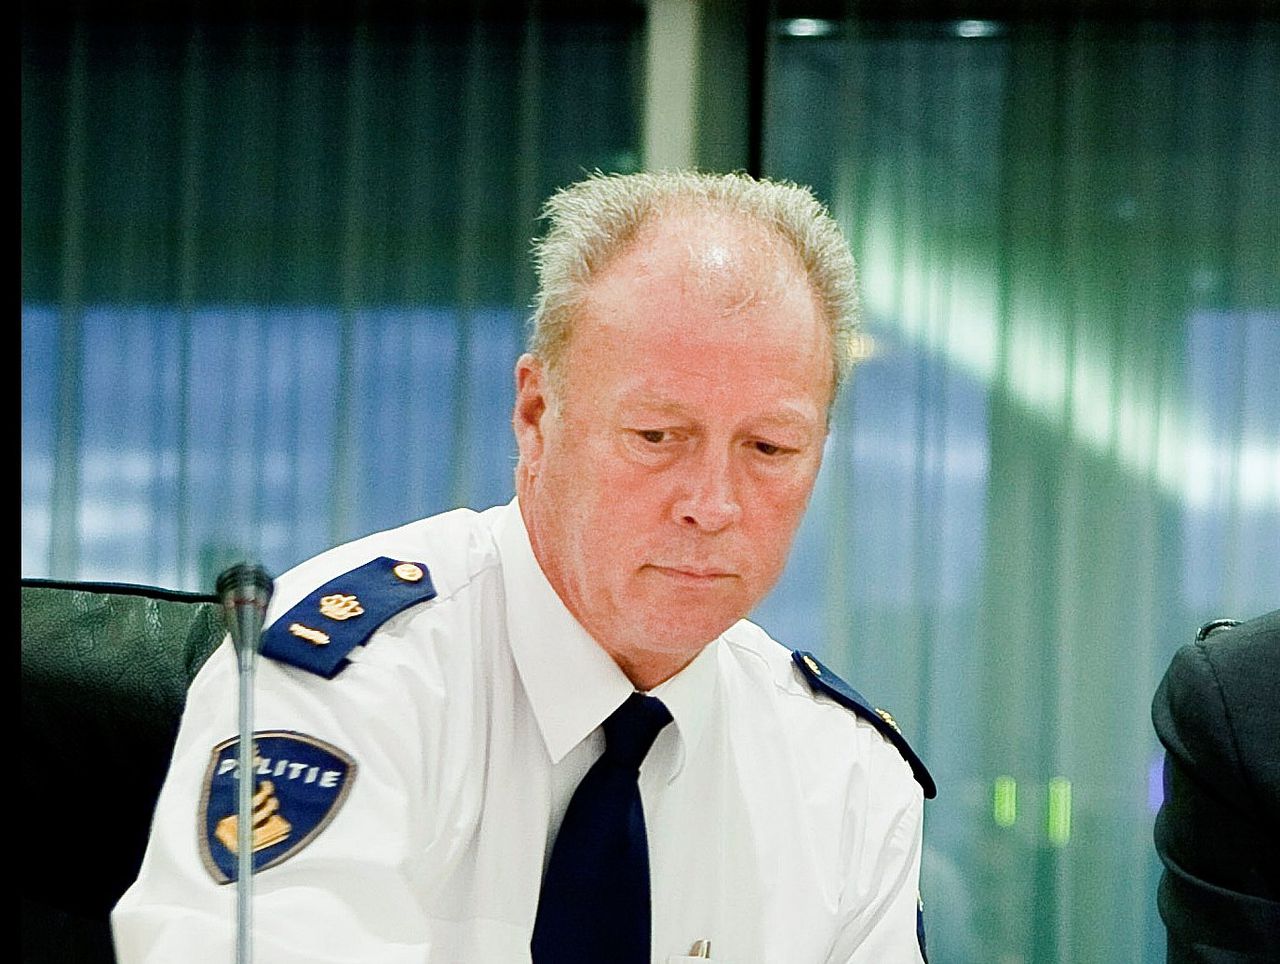 Politiecommissaris Ad Smit, die eerder dit jaar werd ontslagen wegens verduistering van politiegeld.